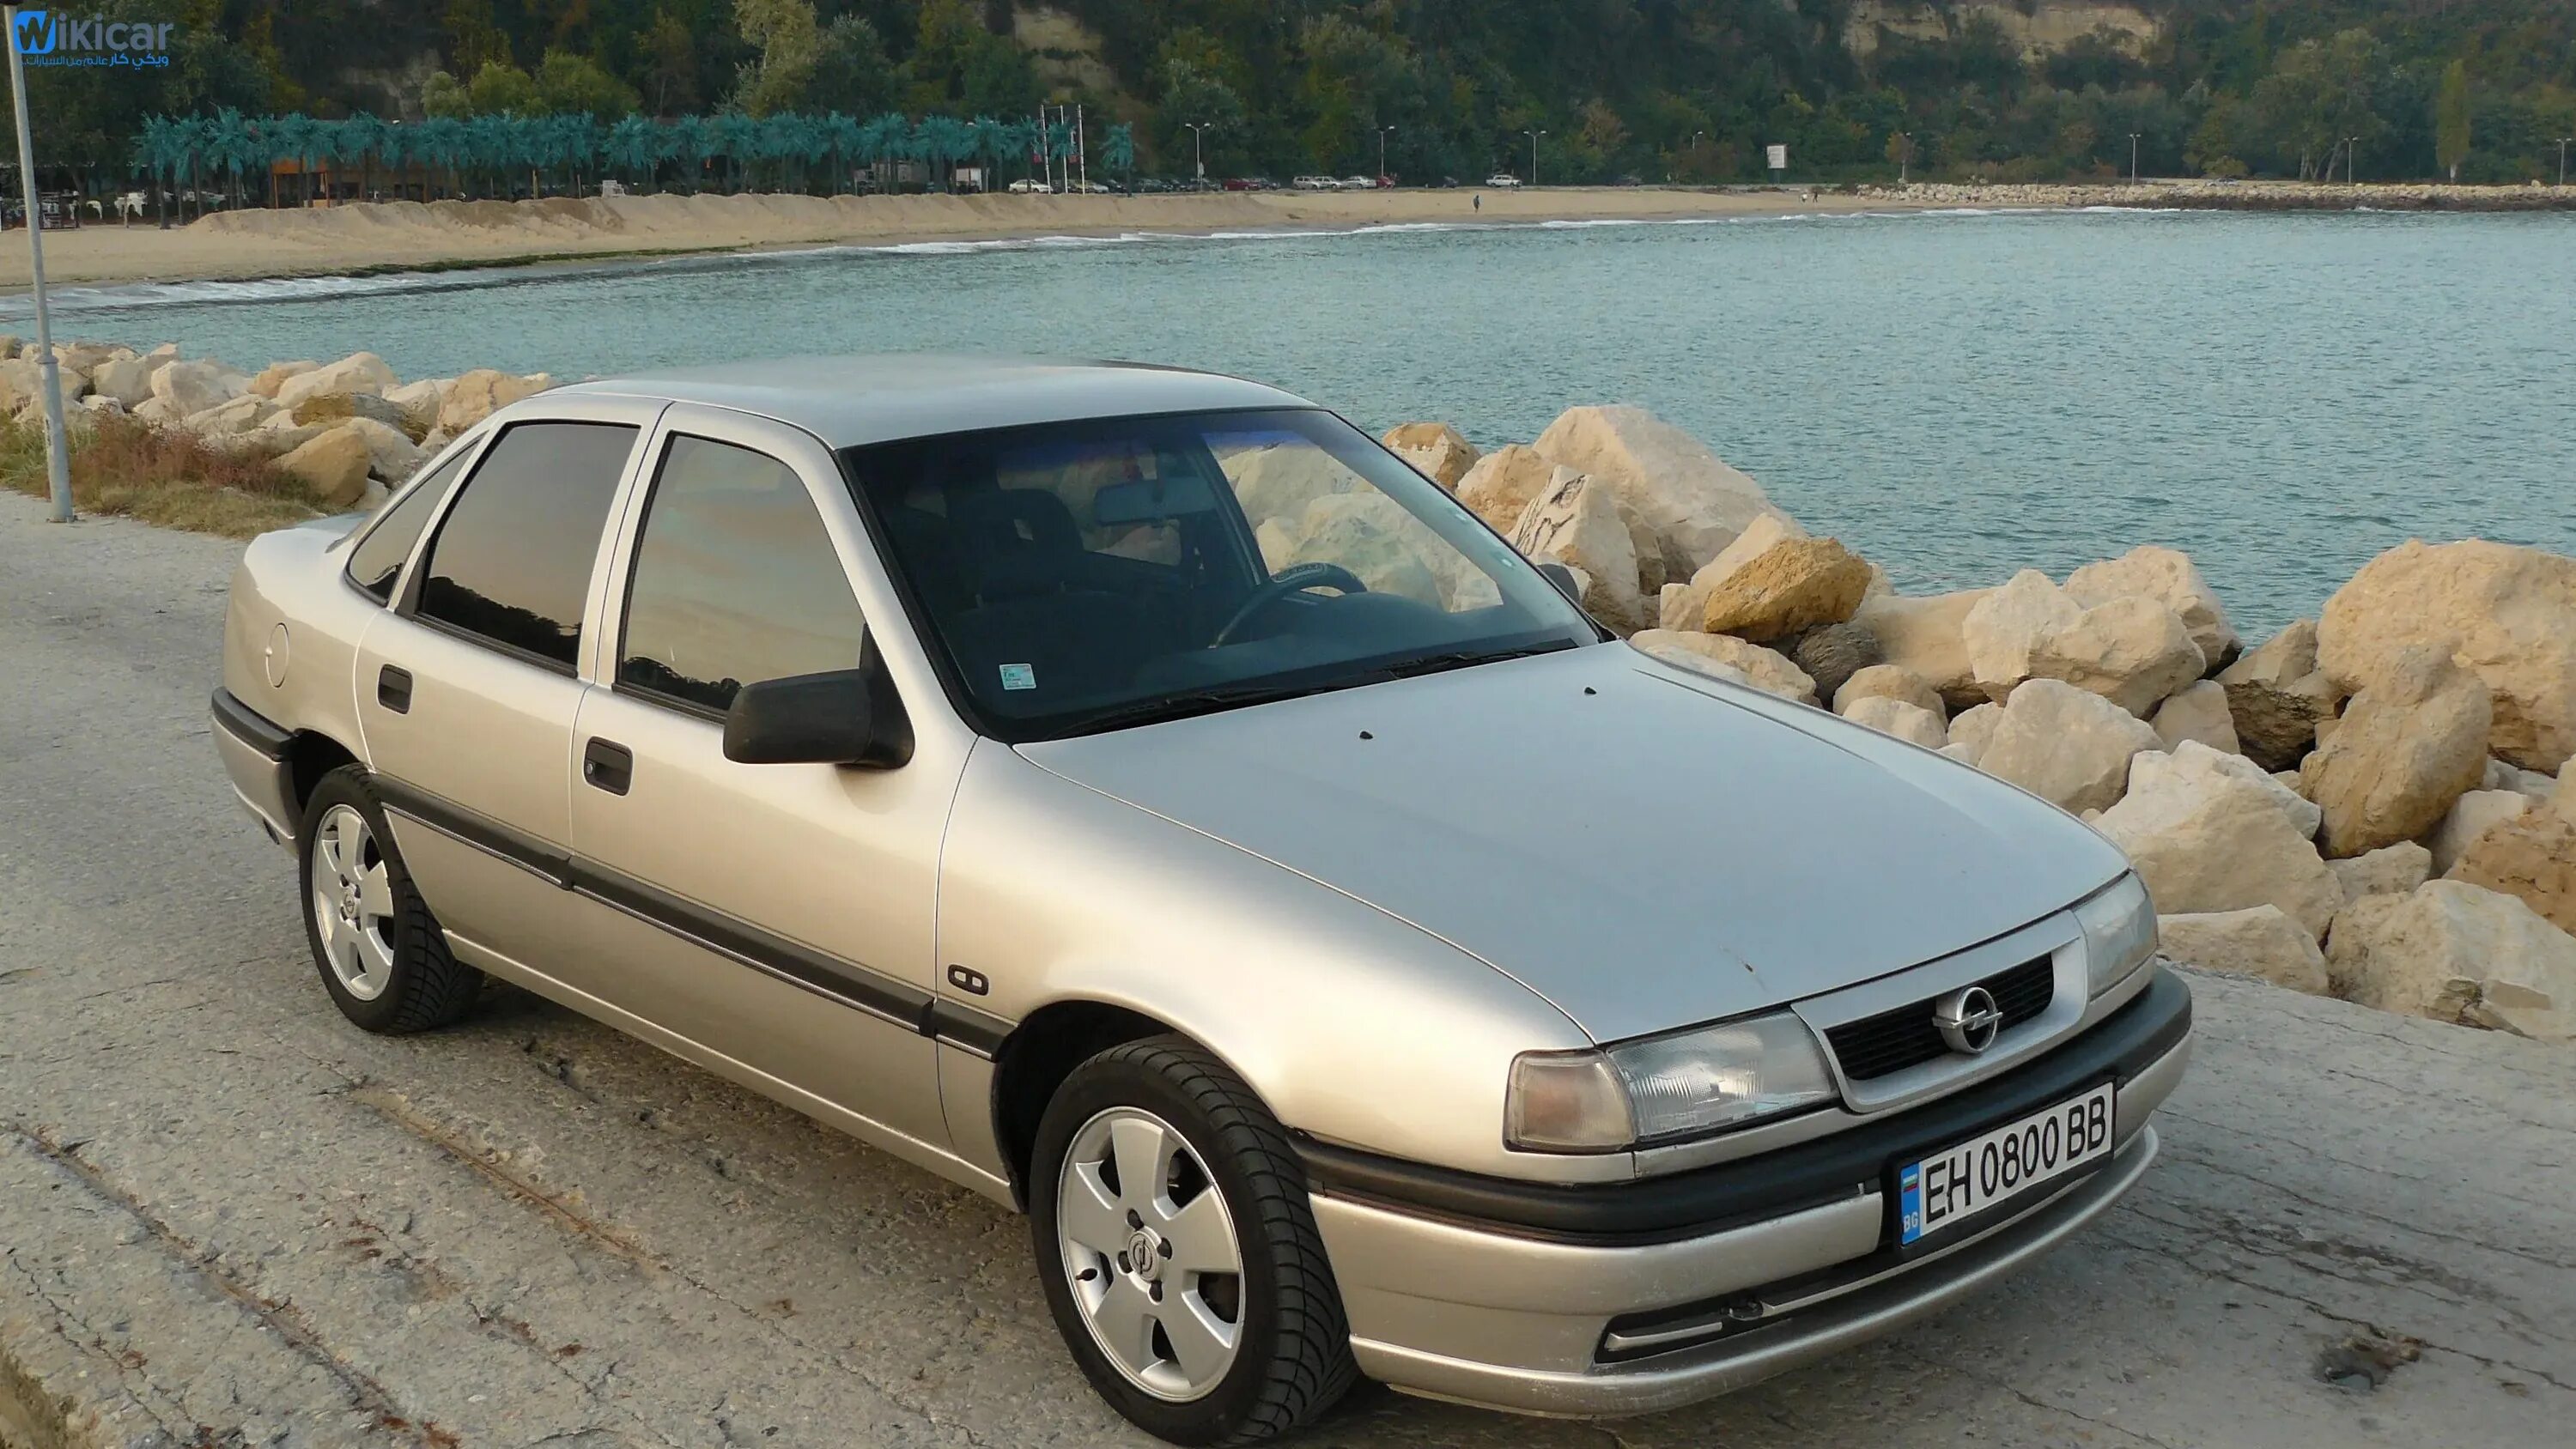 Выпуск вектра б. Опель Вектра 1.6 1995. Опель Вектра с 1.8 1995. Opel Vectra 1.8. Опель Вектра 1992г.